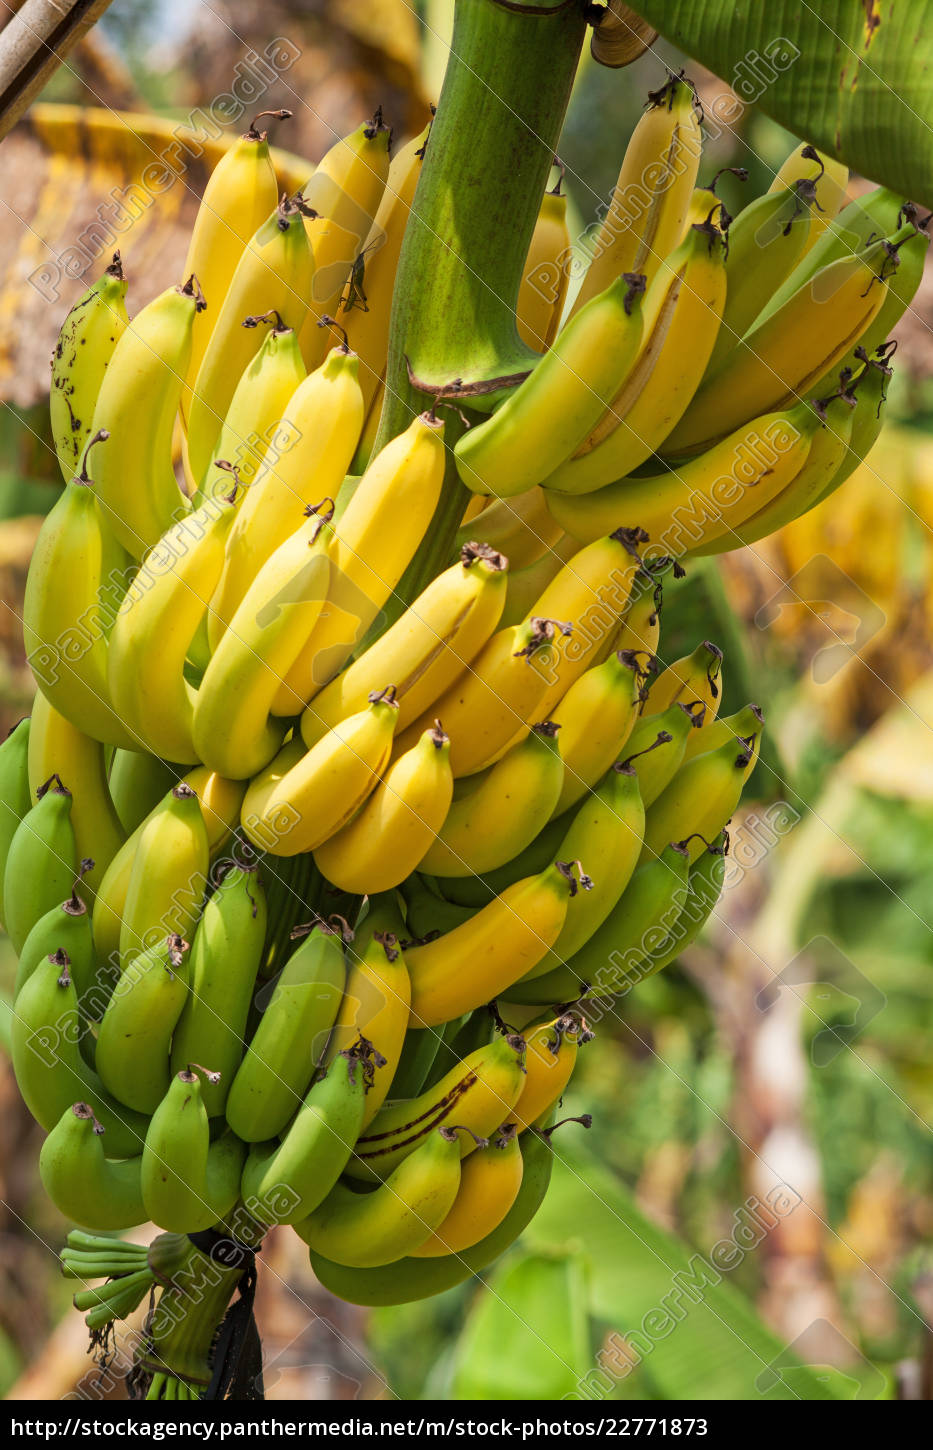 Bananenbaum - Lizenzfreies Bild - #22771873 | Bildagentur PantherMedia